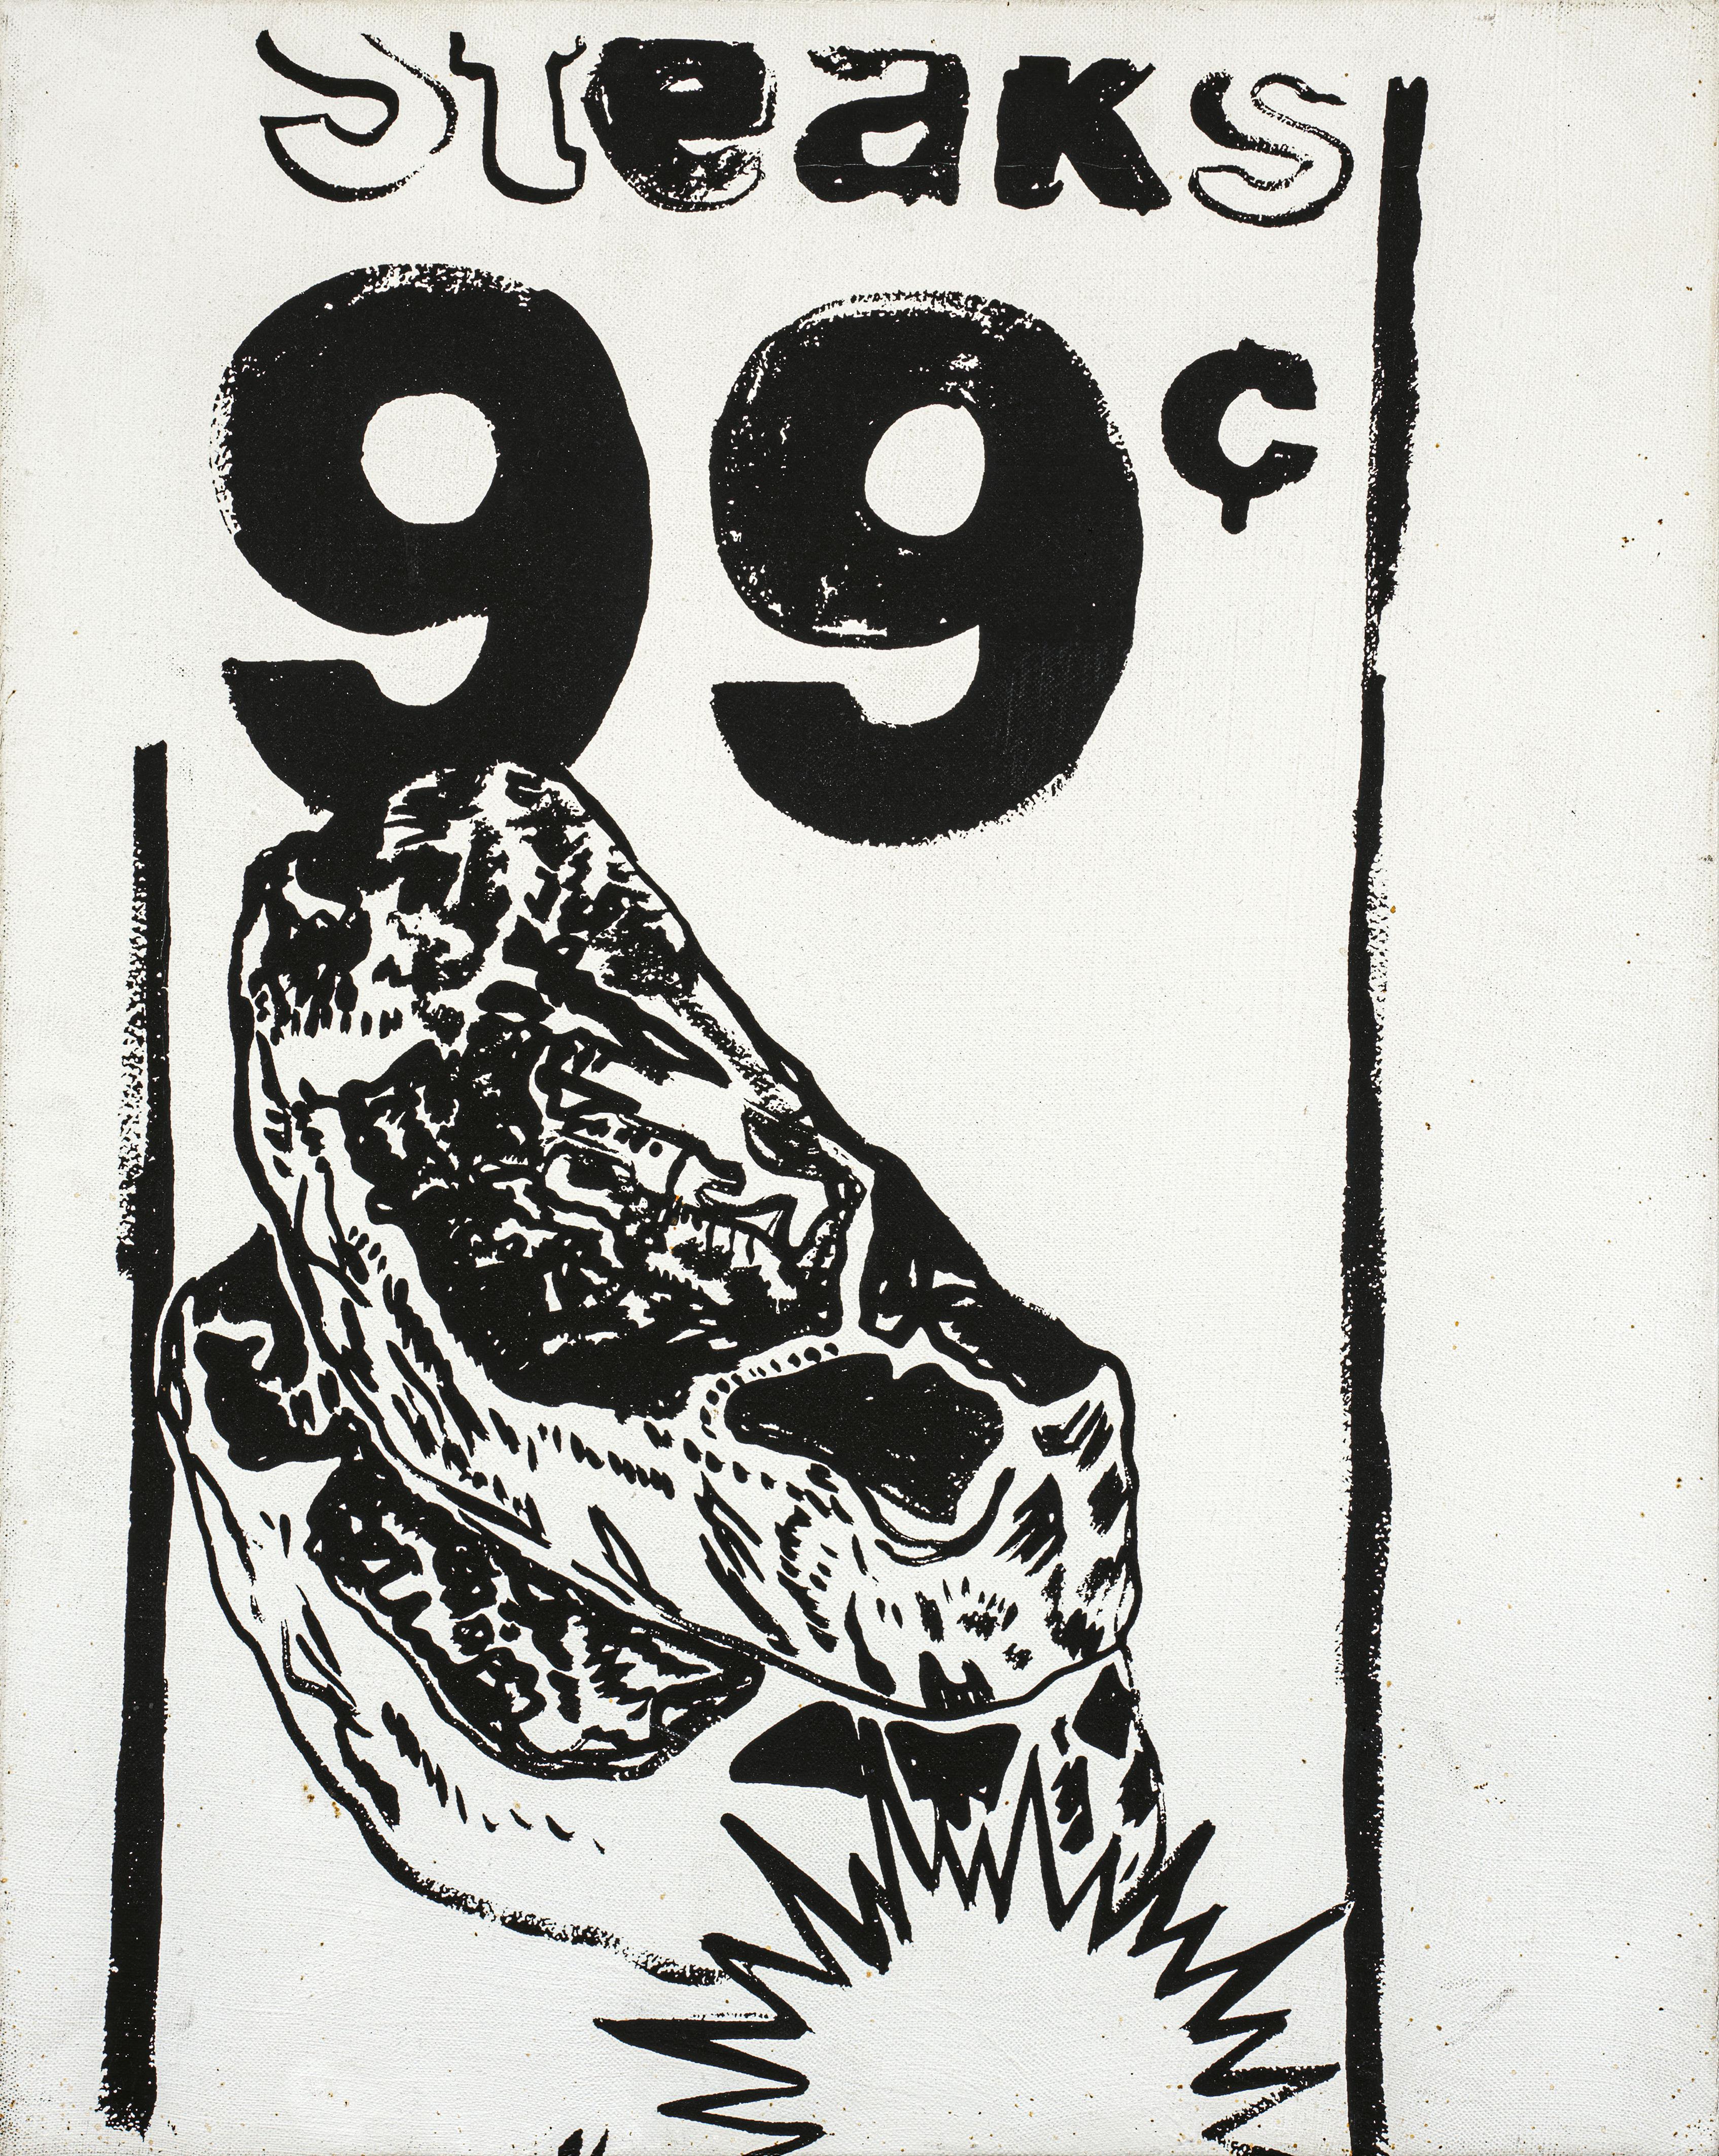 Andy Warhol - Steaks 99 c - image-1